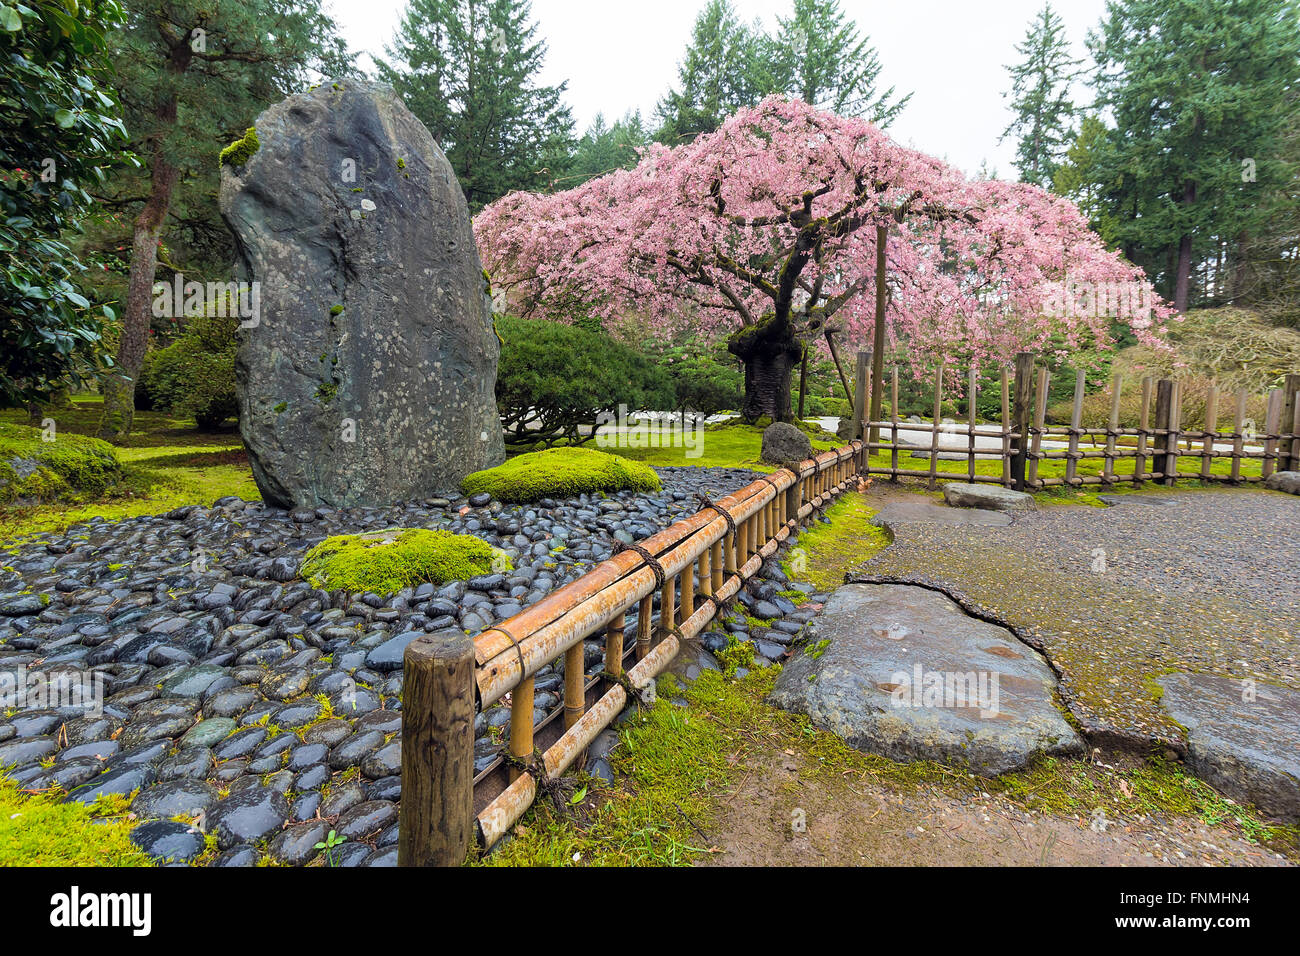 Fiore di Ciliegio albero in fiore dal paesaggio naturale di roccia del giardino giapponese nella stagione primaverile Foto Stock